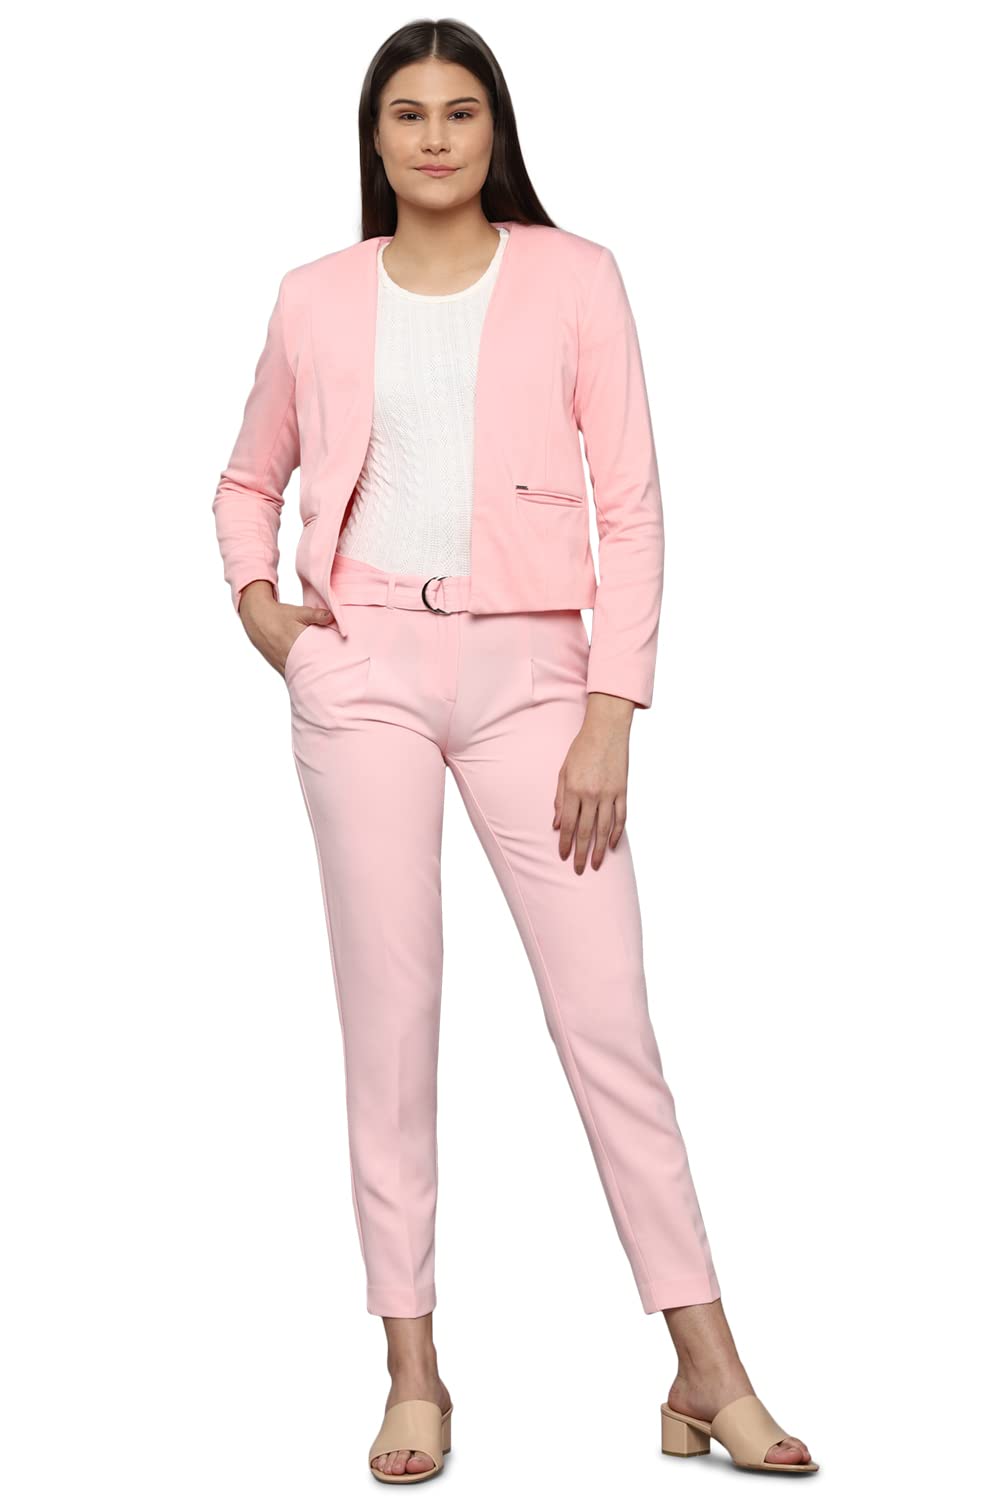 Allen Solly Women's Blazer (AHKZWRGFS55688_Pink 